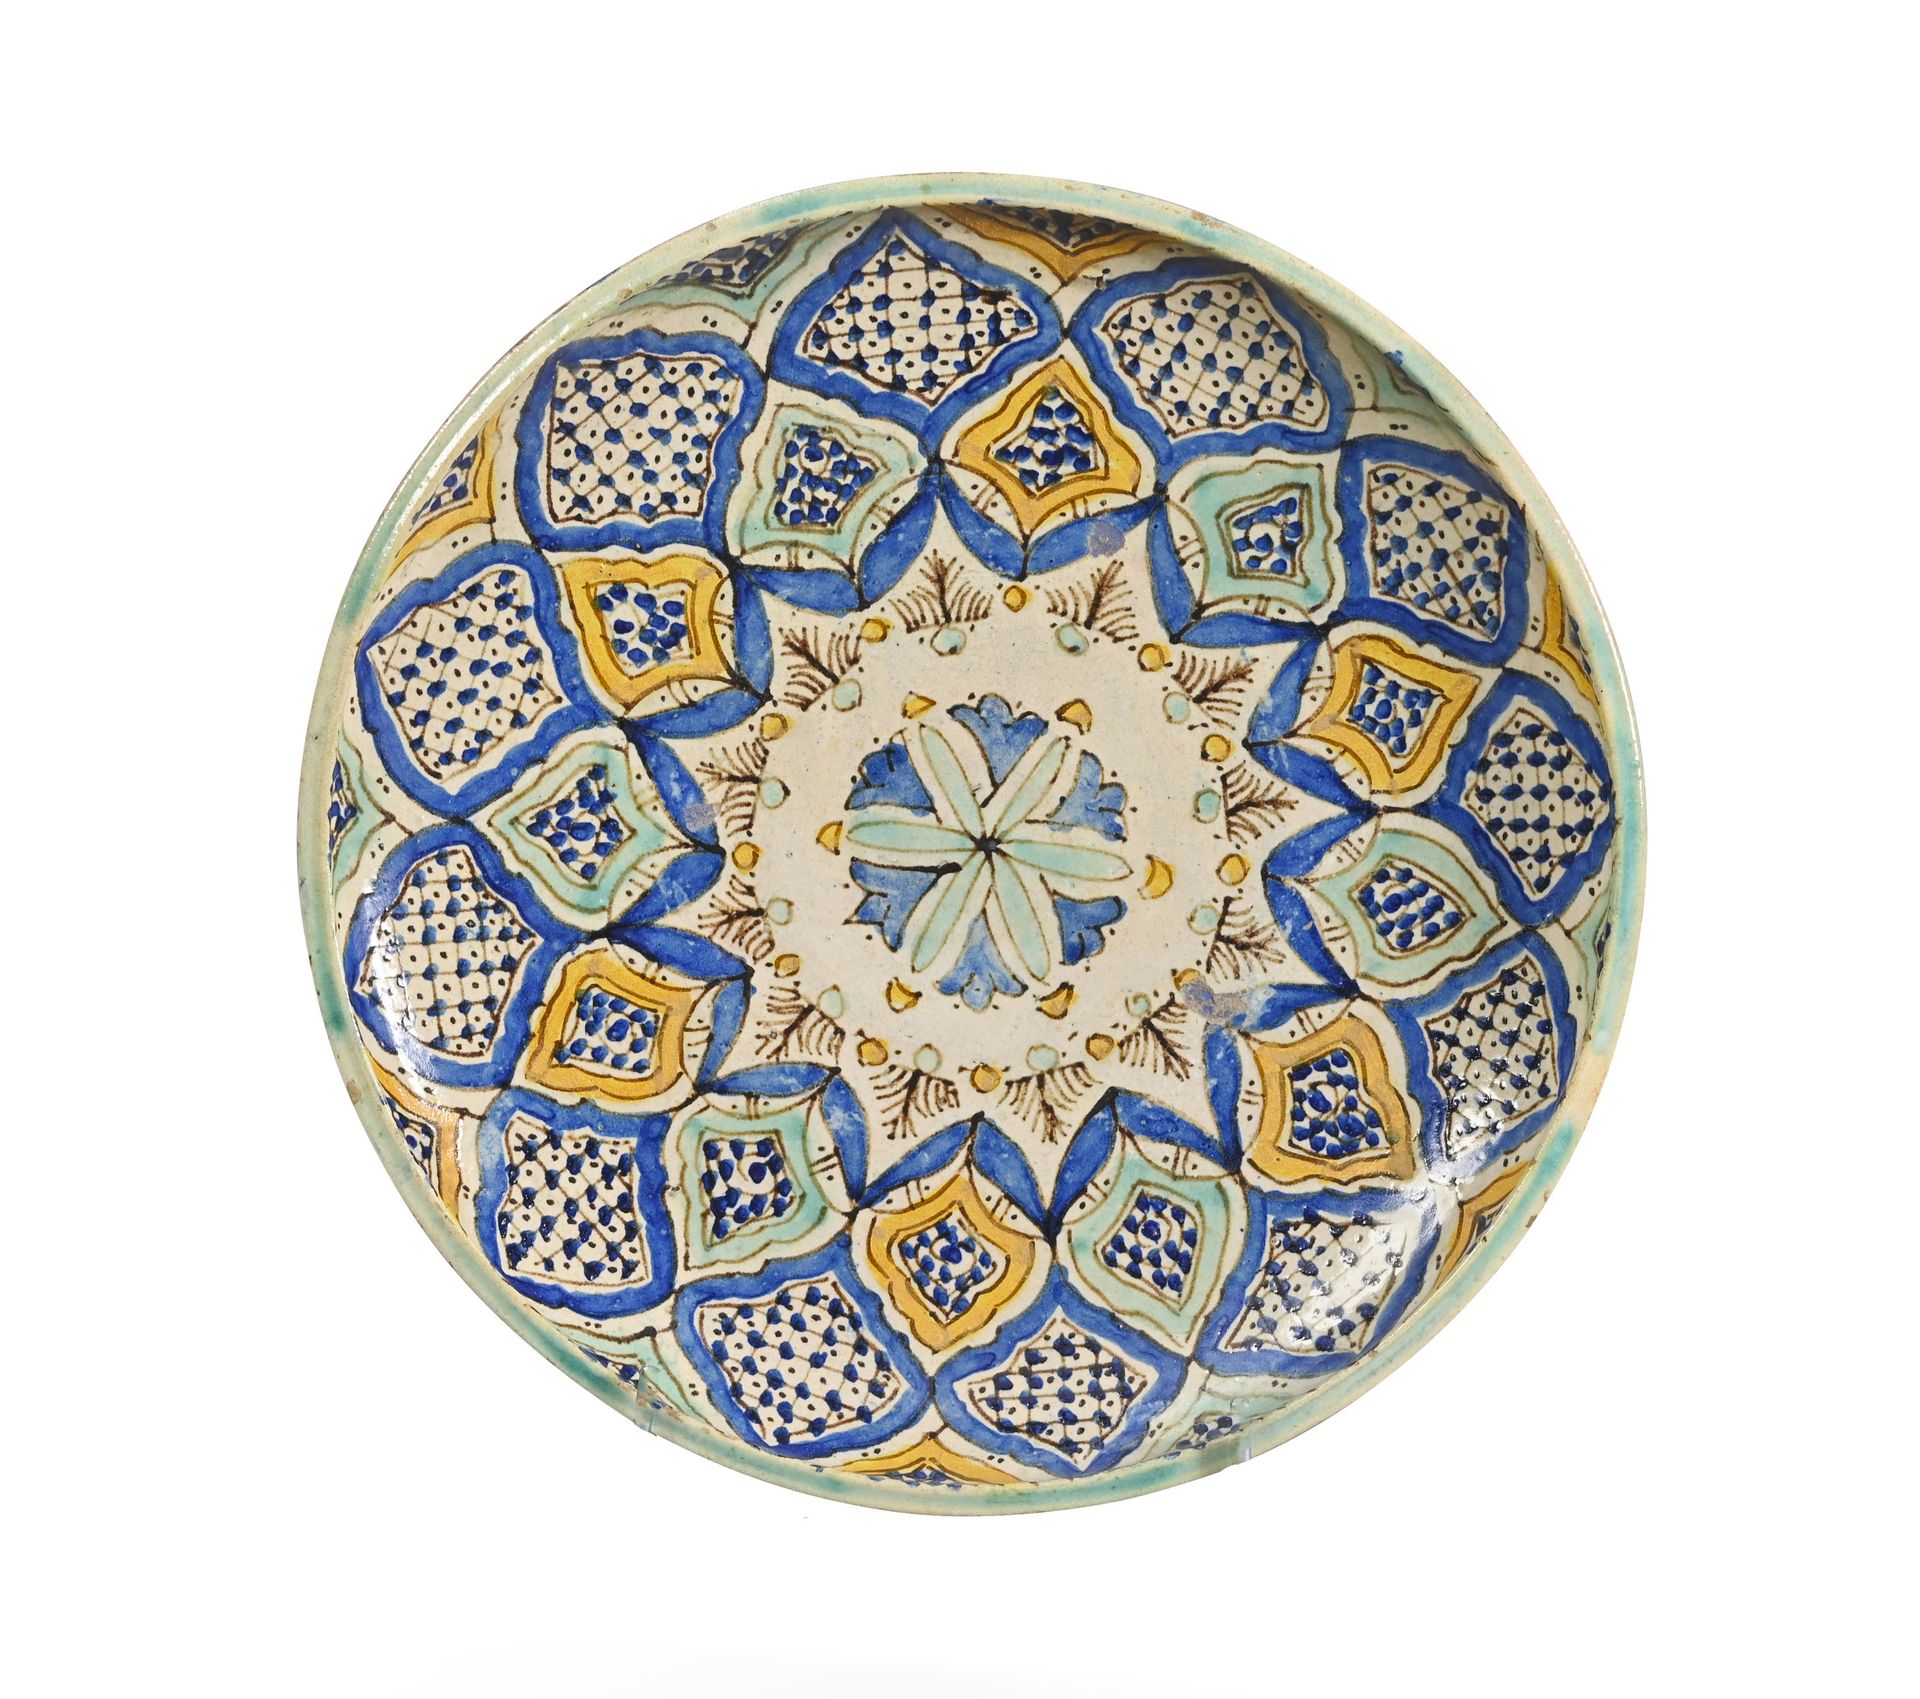 TUNISIE - XIXe / XXe siècle 一批六件突尼斯瓷器

瓷器，有多色彩绘装饰

缺陷和丢失的部分

ǞǞǞ